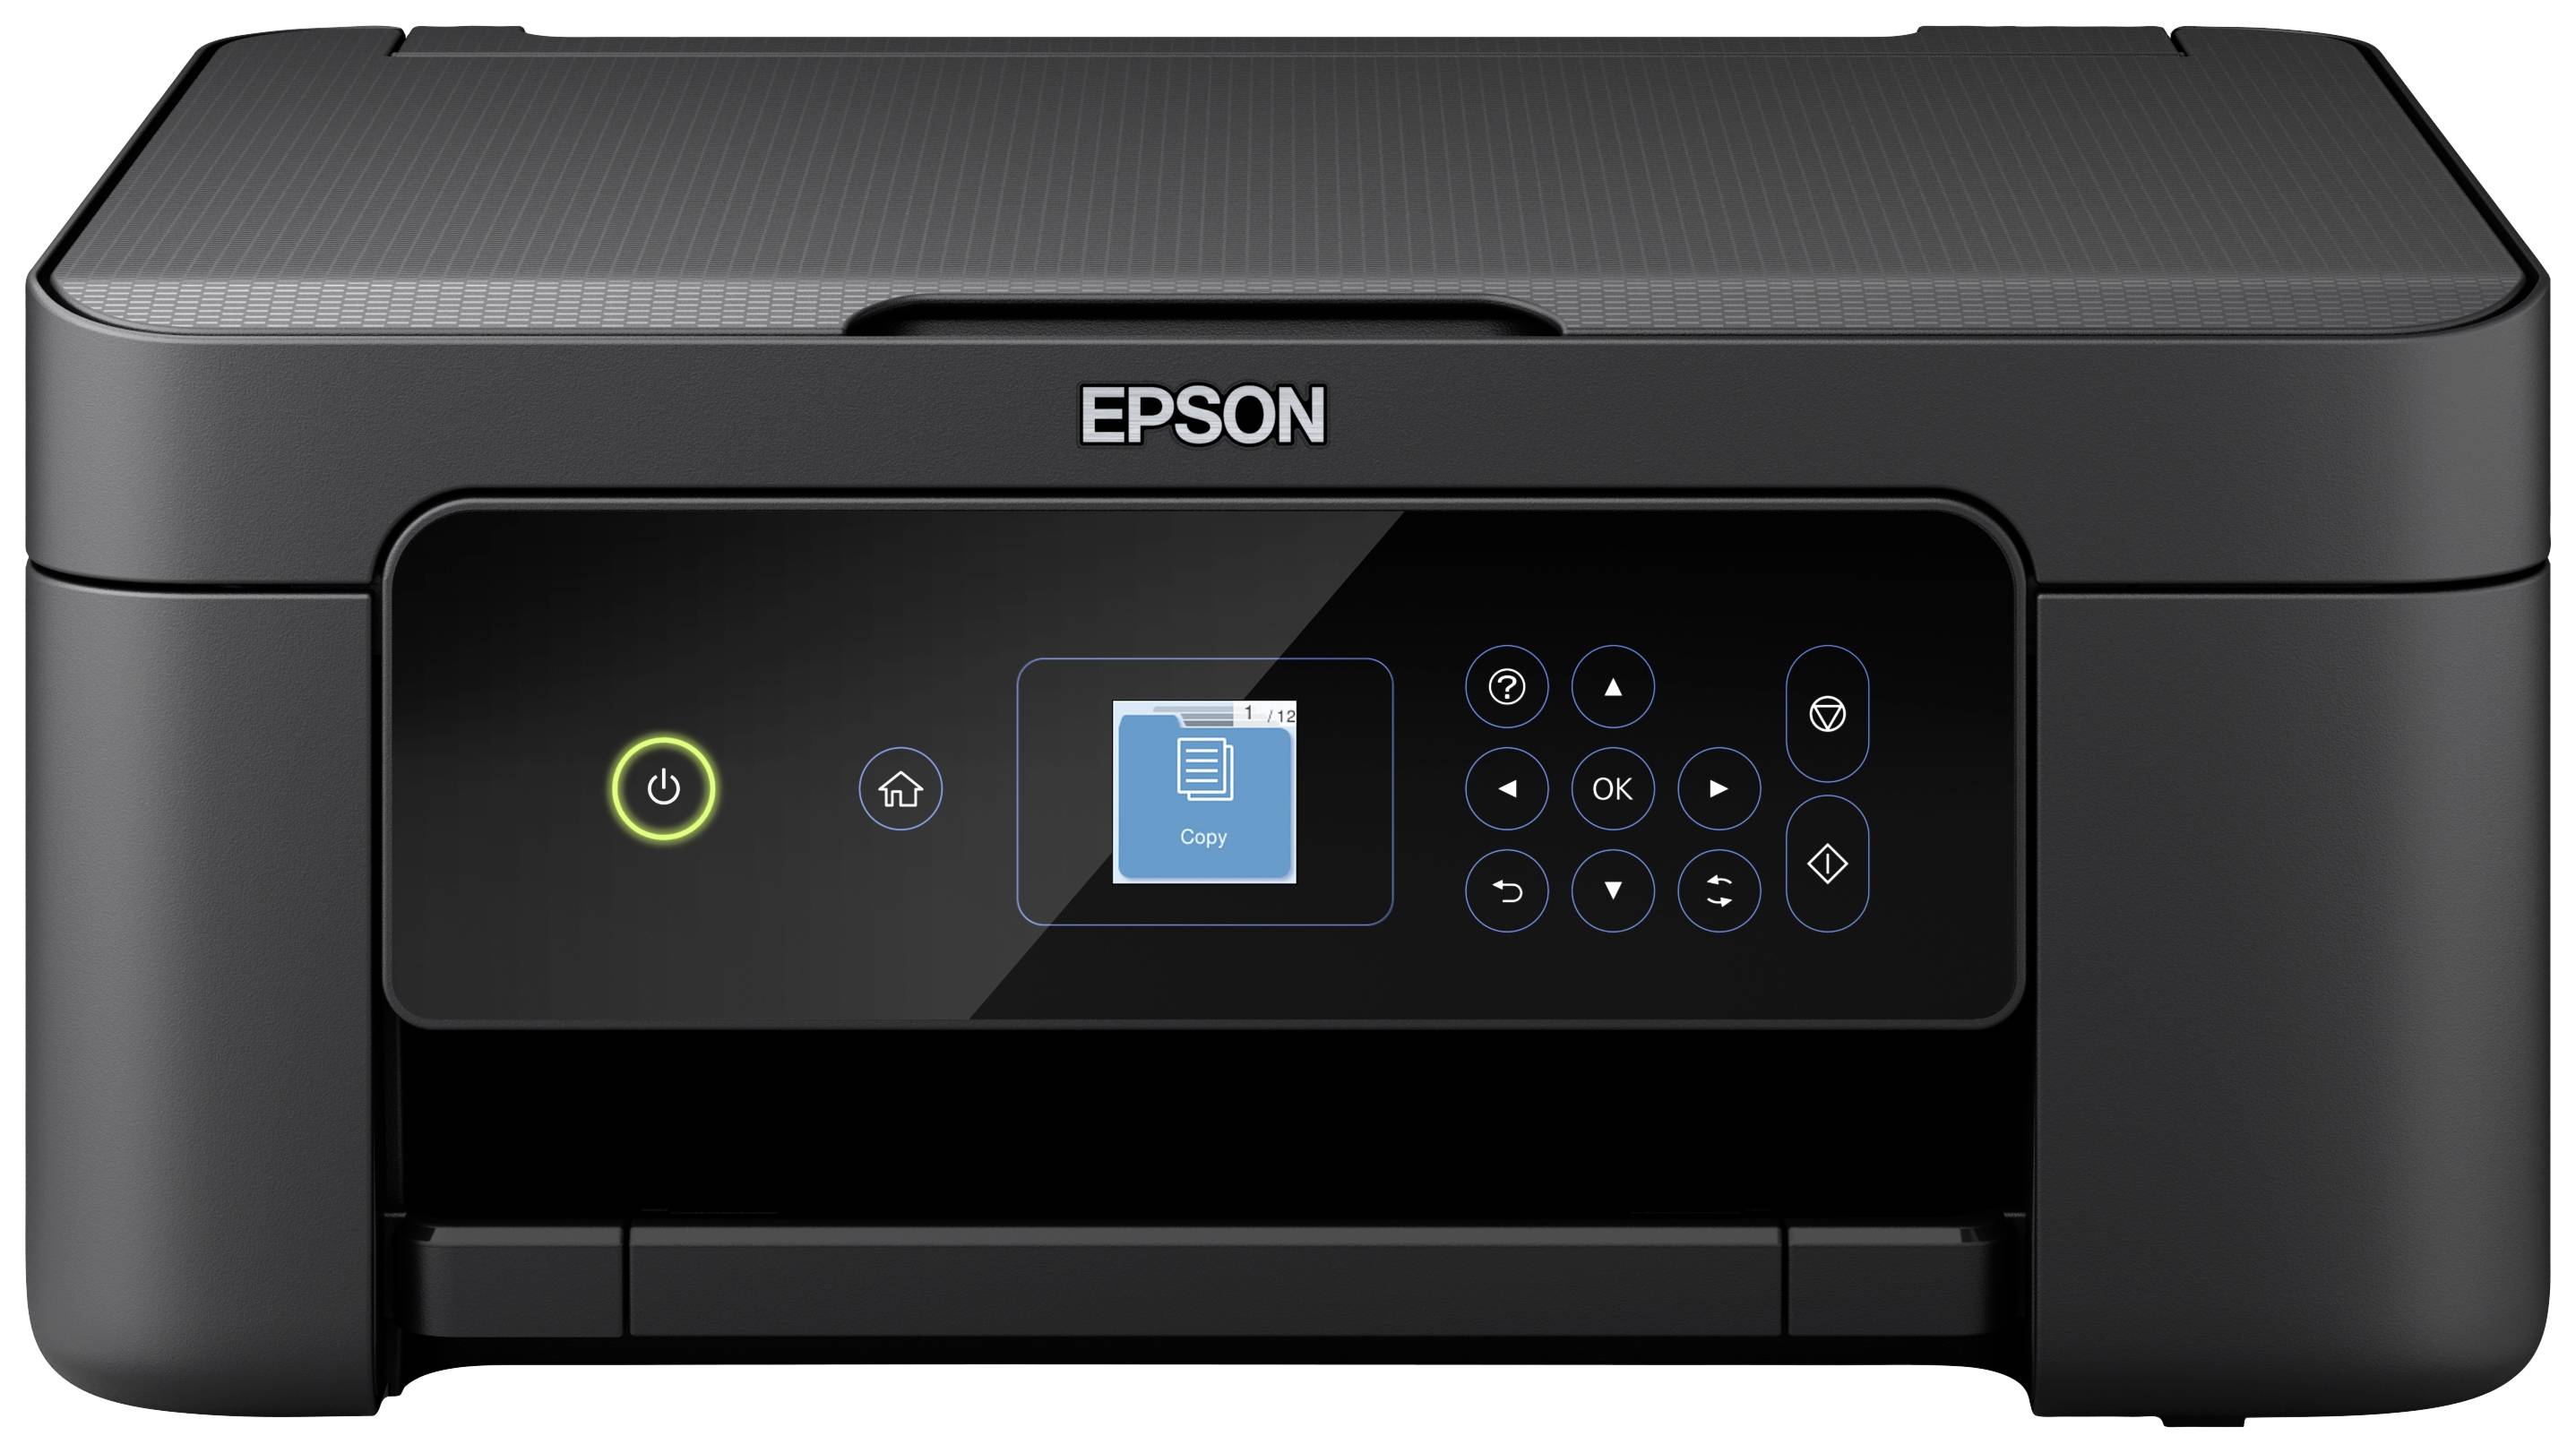 Epson Expression USB, Multifunktionsdrucker XP-3205 Drucker, kaufen Home Kopierer Duplex, Farb Tintenstrahl WLAN Scanner, A4